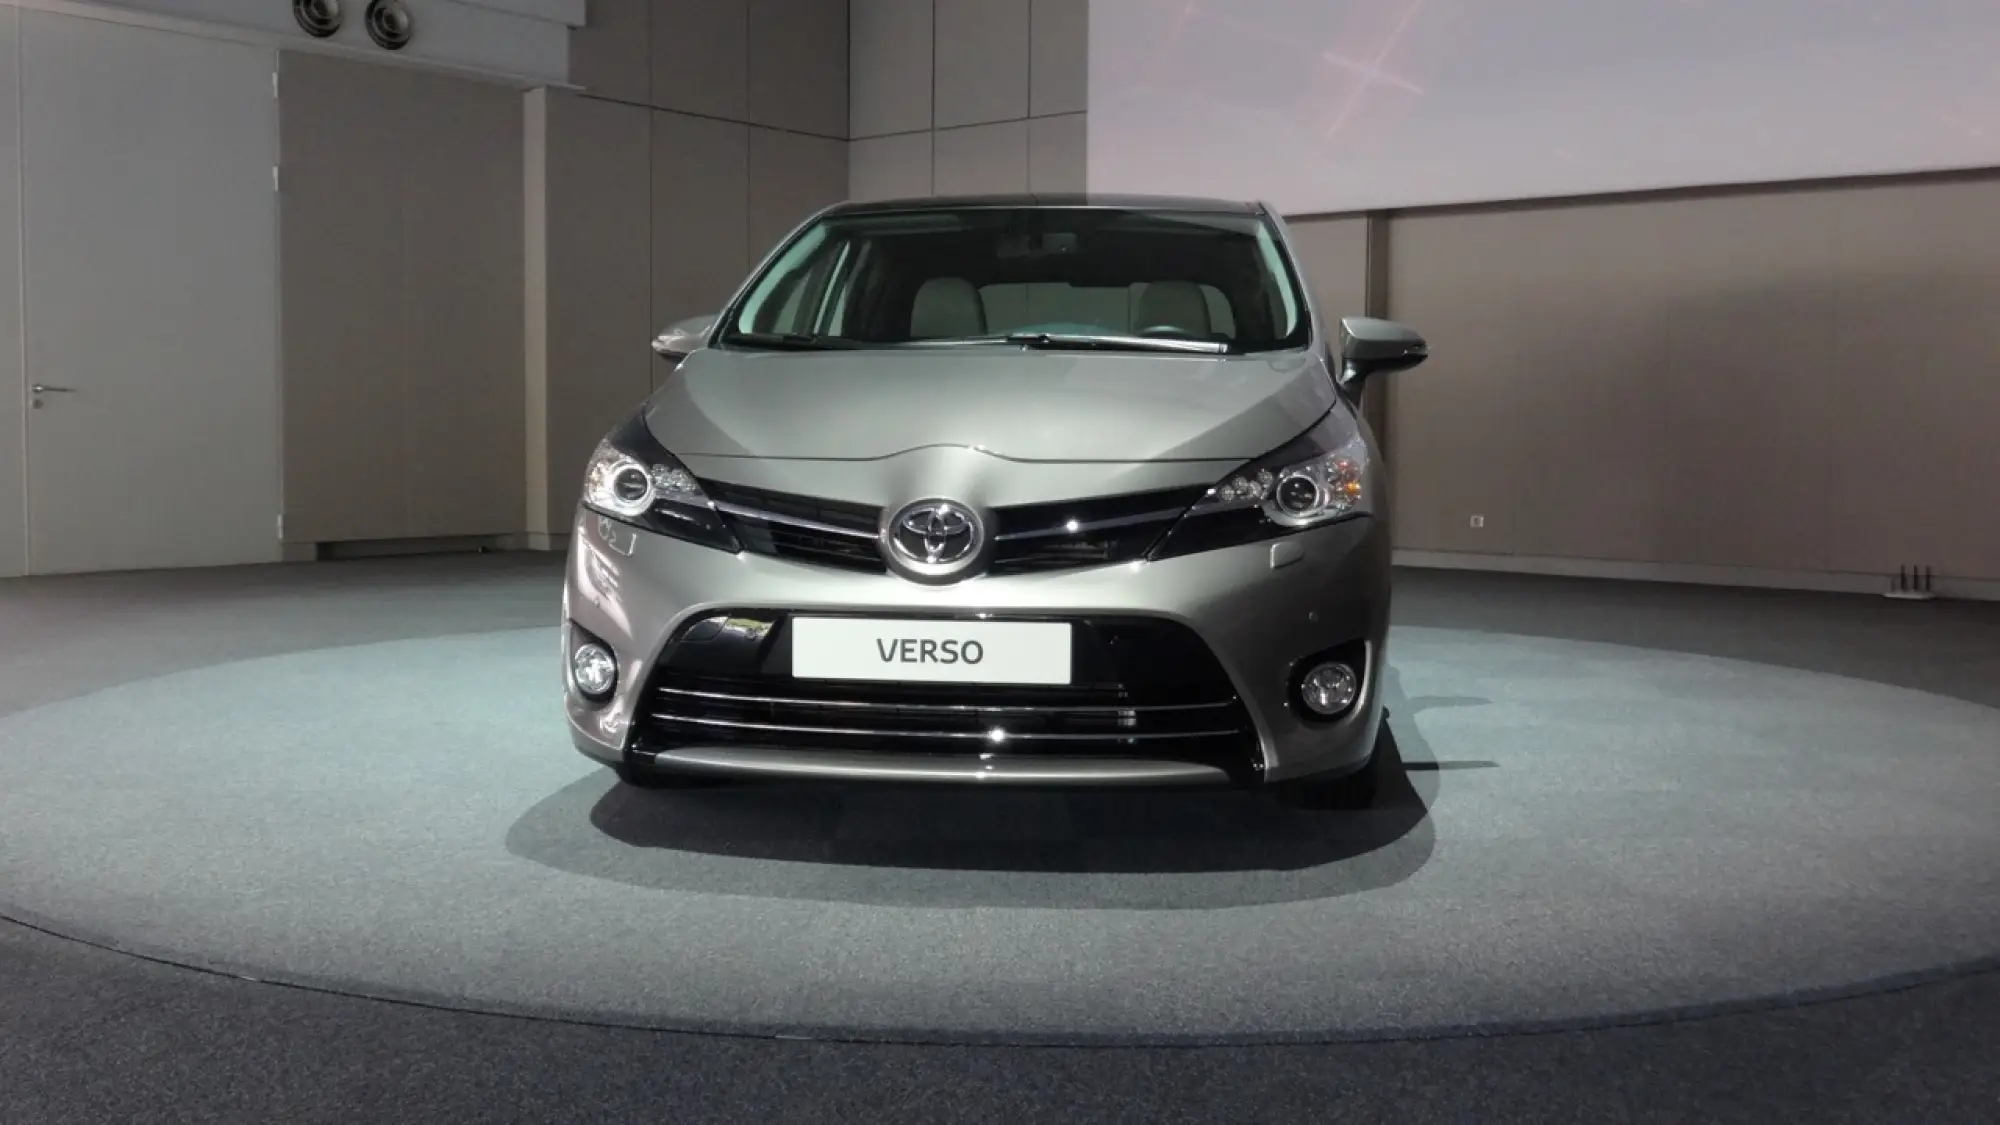 Toyota Verso MY 2014 1.6 D-4D - 6